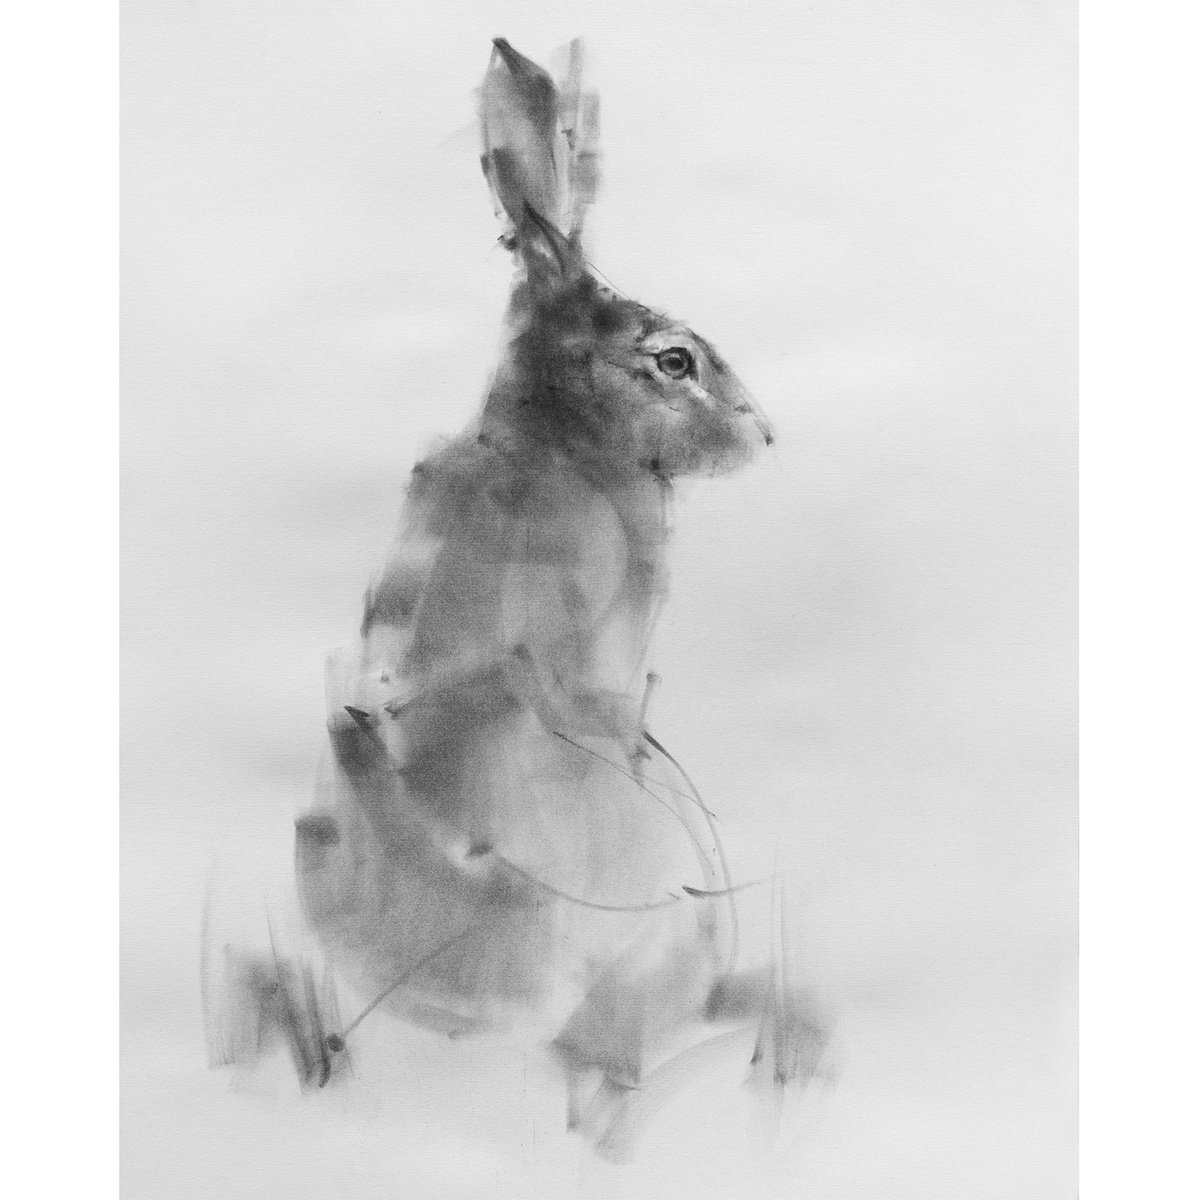 Hare No 1 by Tianyin Wang